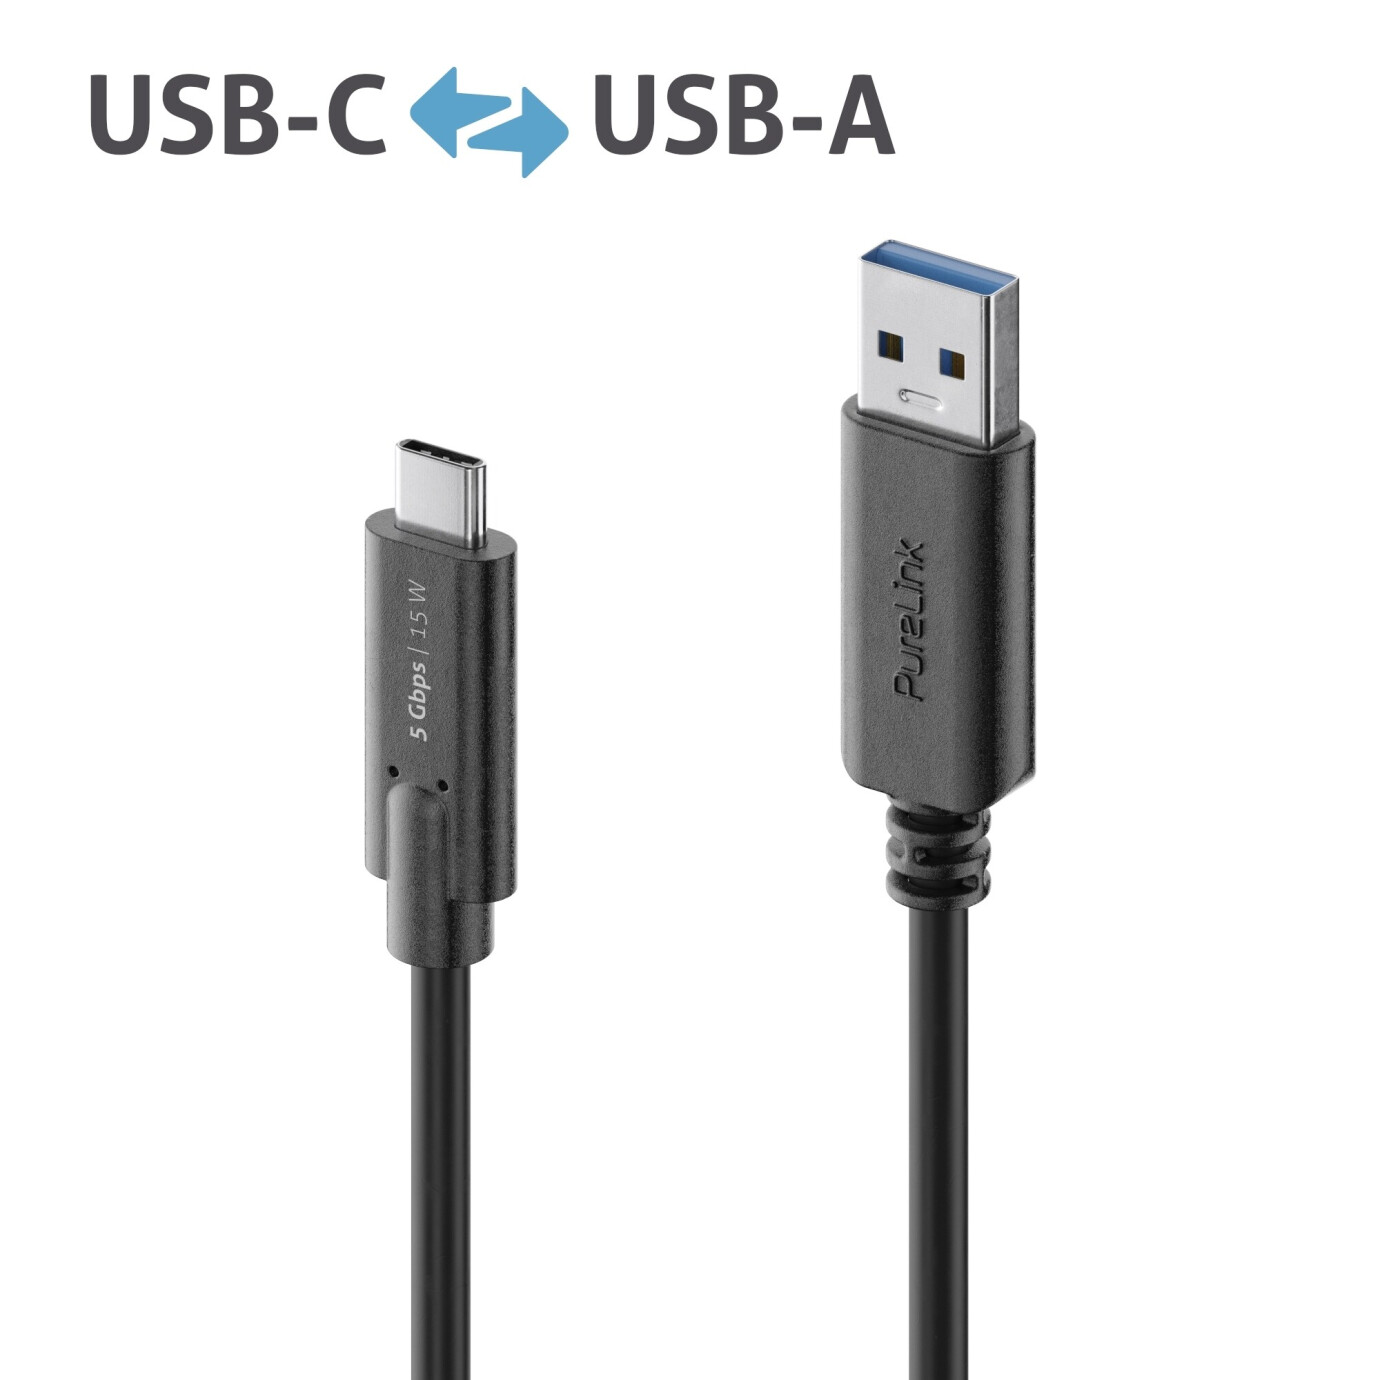 Purelink IS2601-005 USB-C auf USB-A Kabel 0,5m schwarz